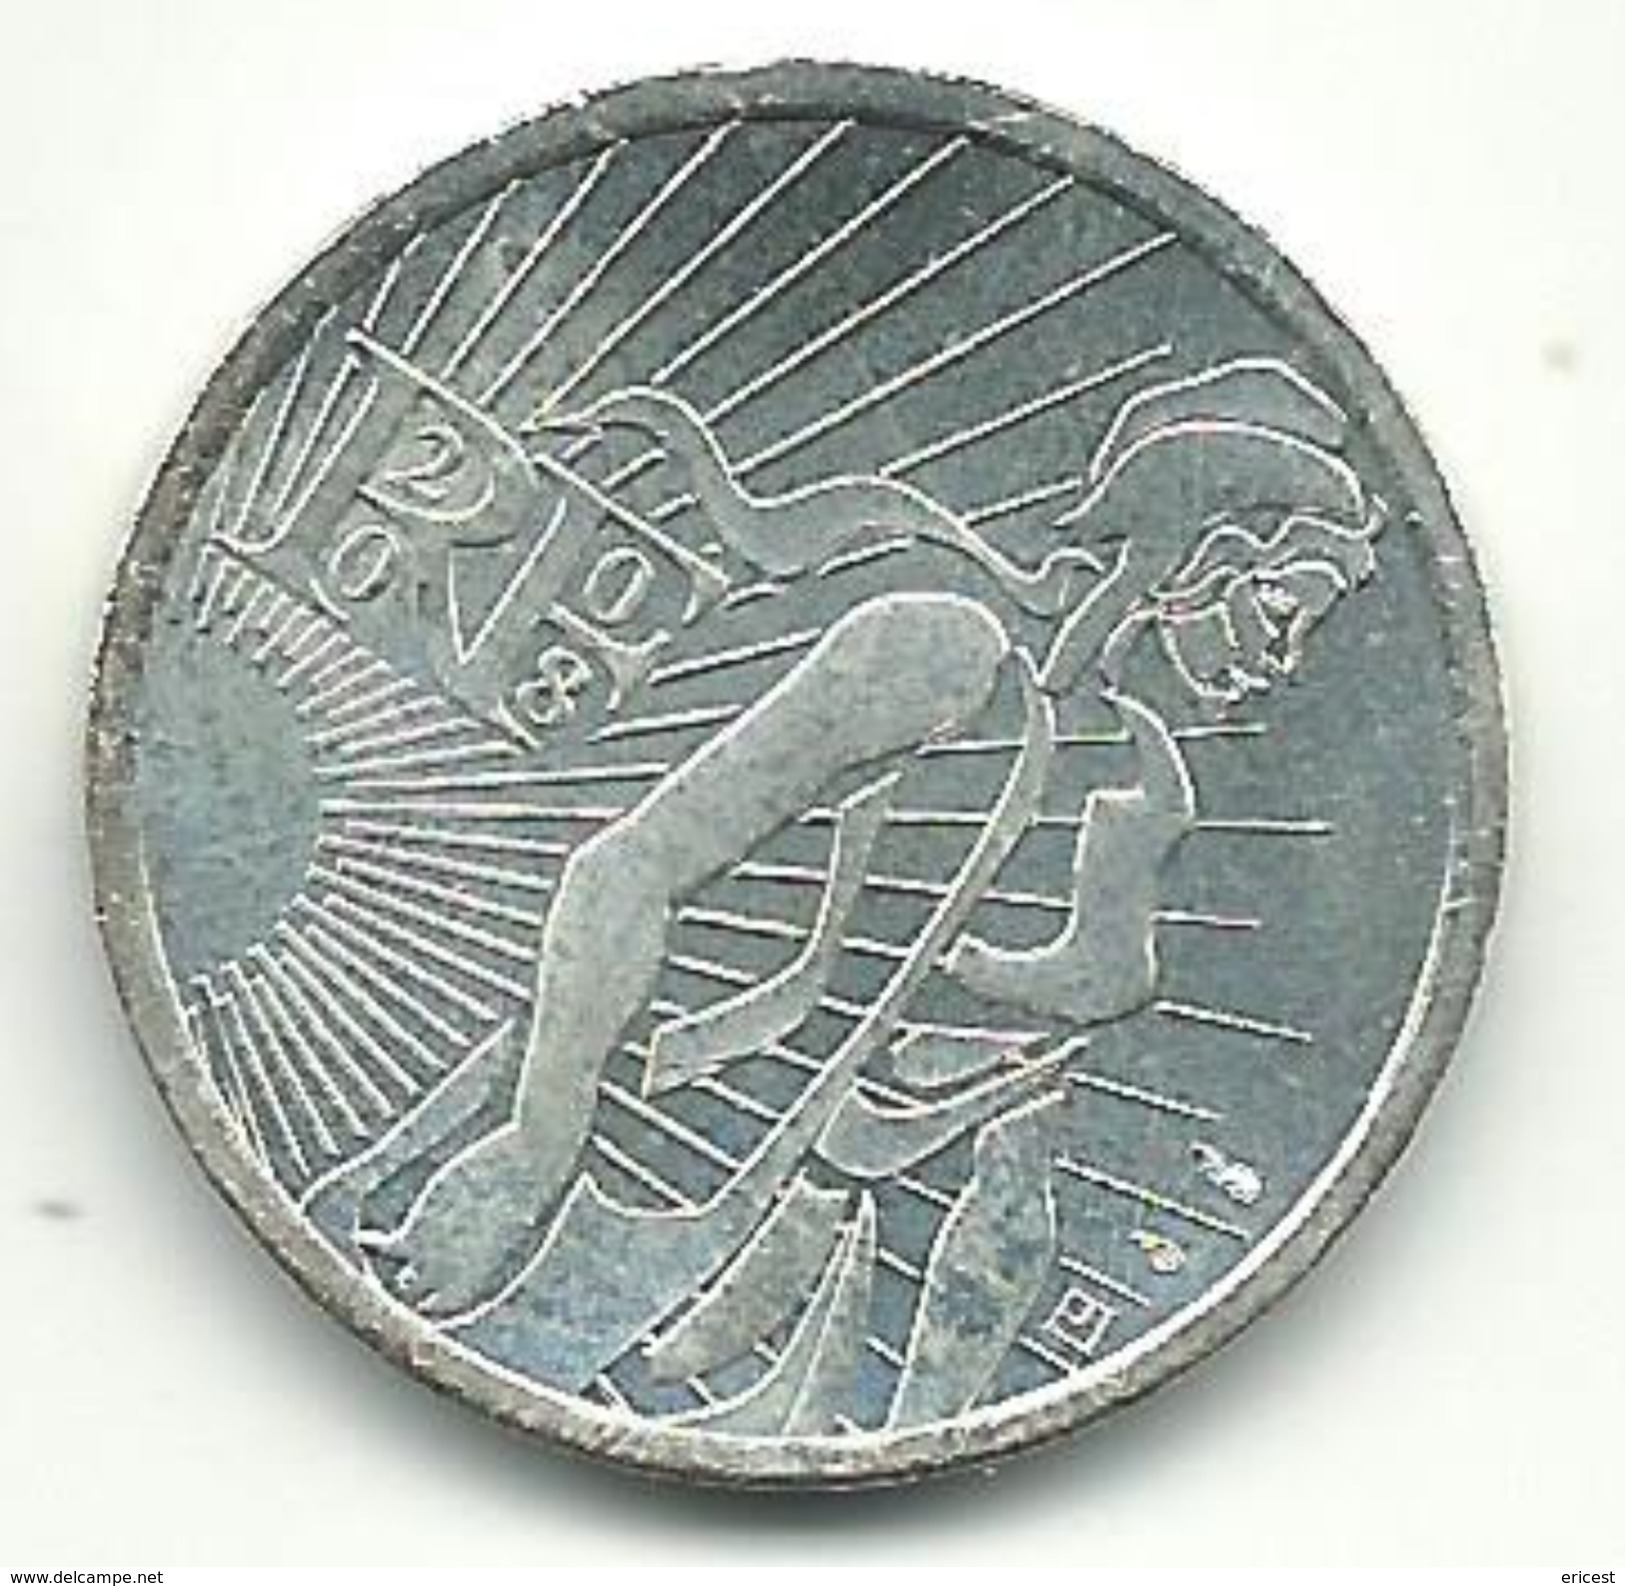 5 EUROS ARGENT 2008 - France